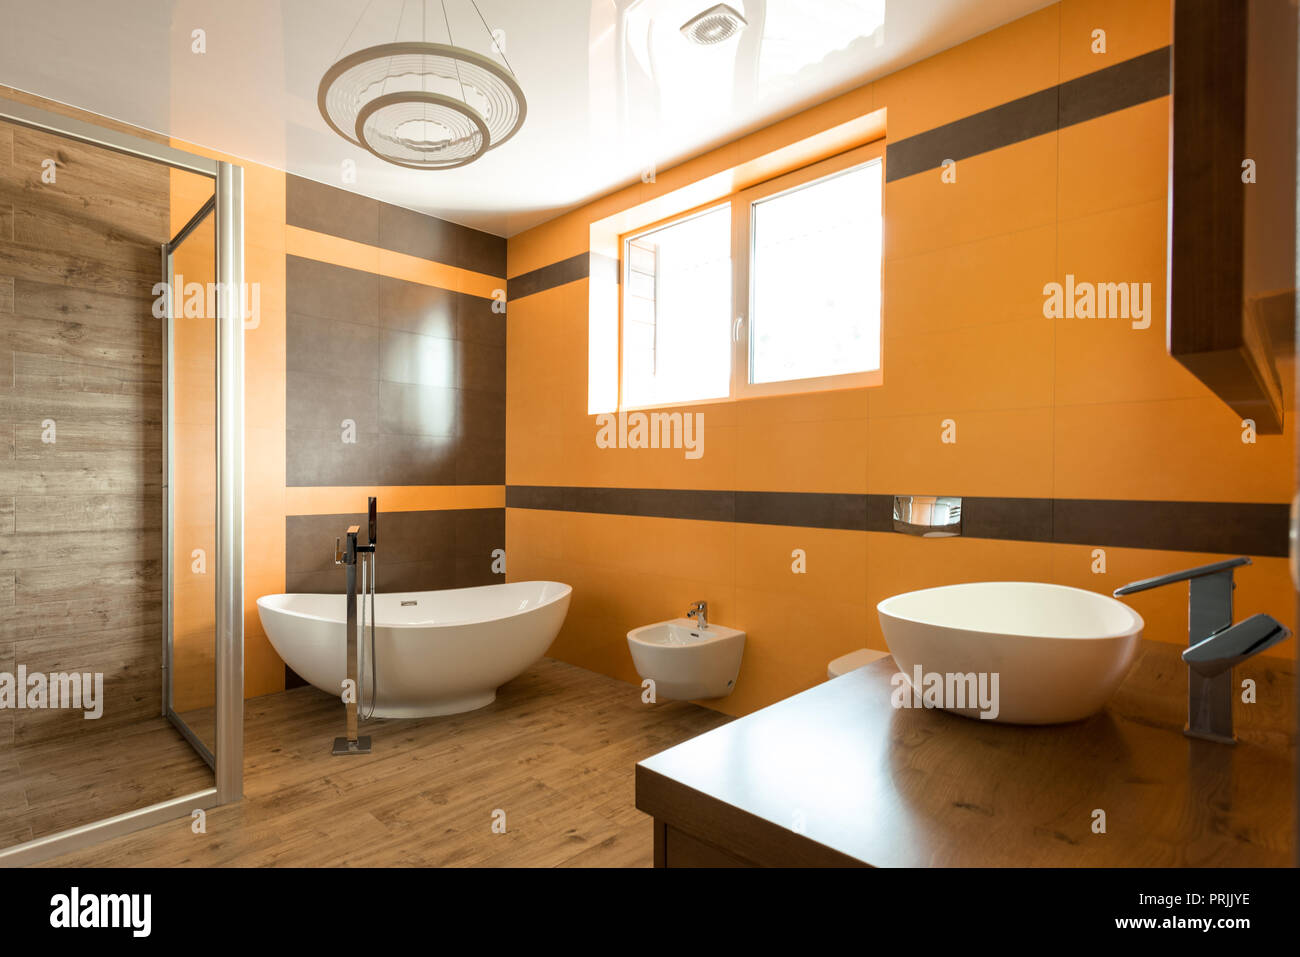 Innenraum der Badezimmer in Orange und Weiß mit Badewanne, Waschbecken und Bidet Stockfoto